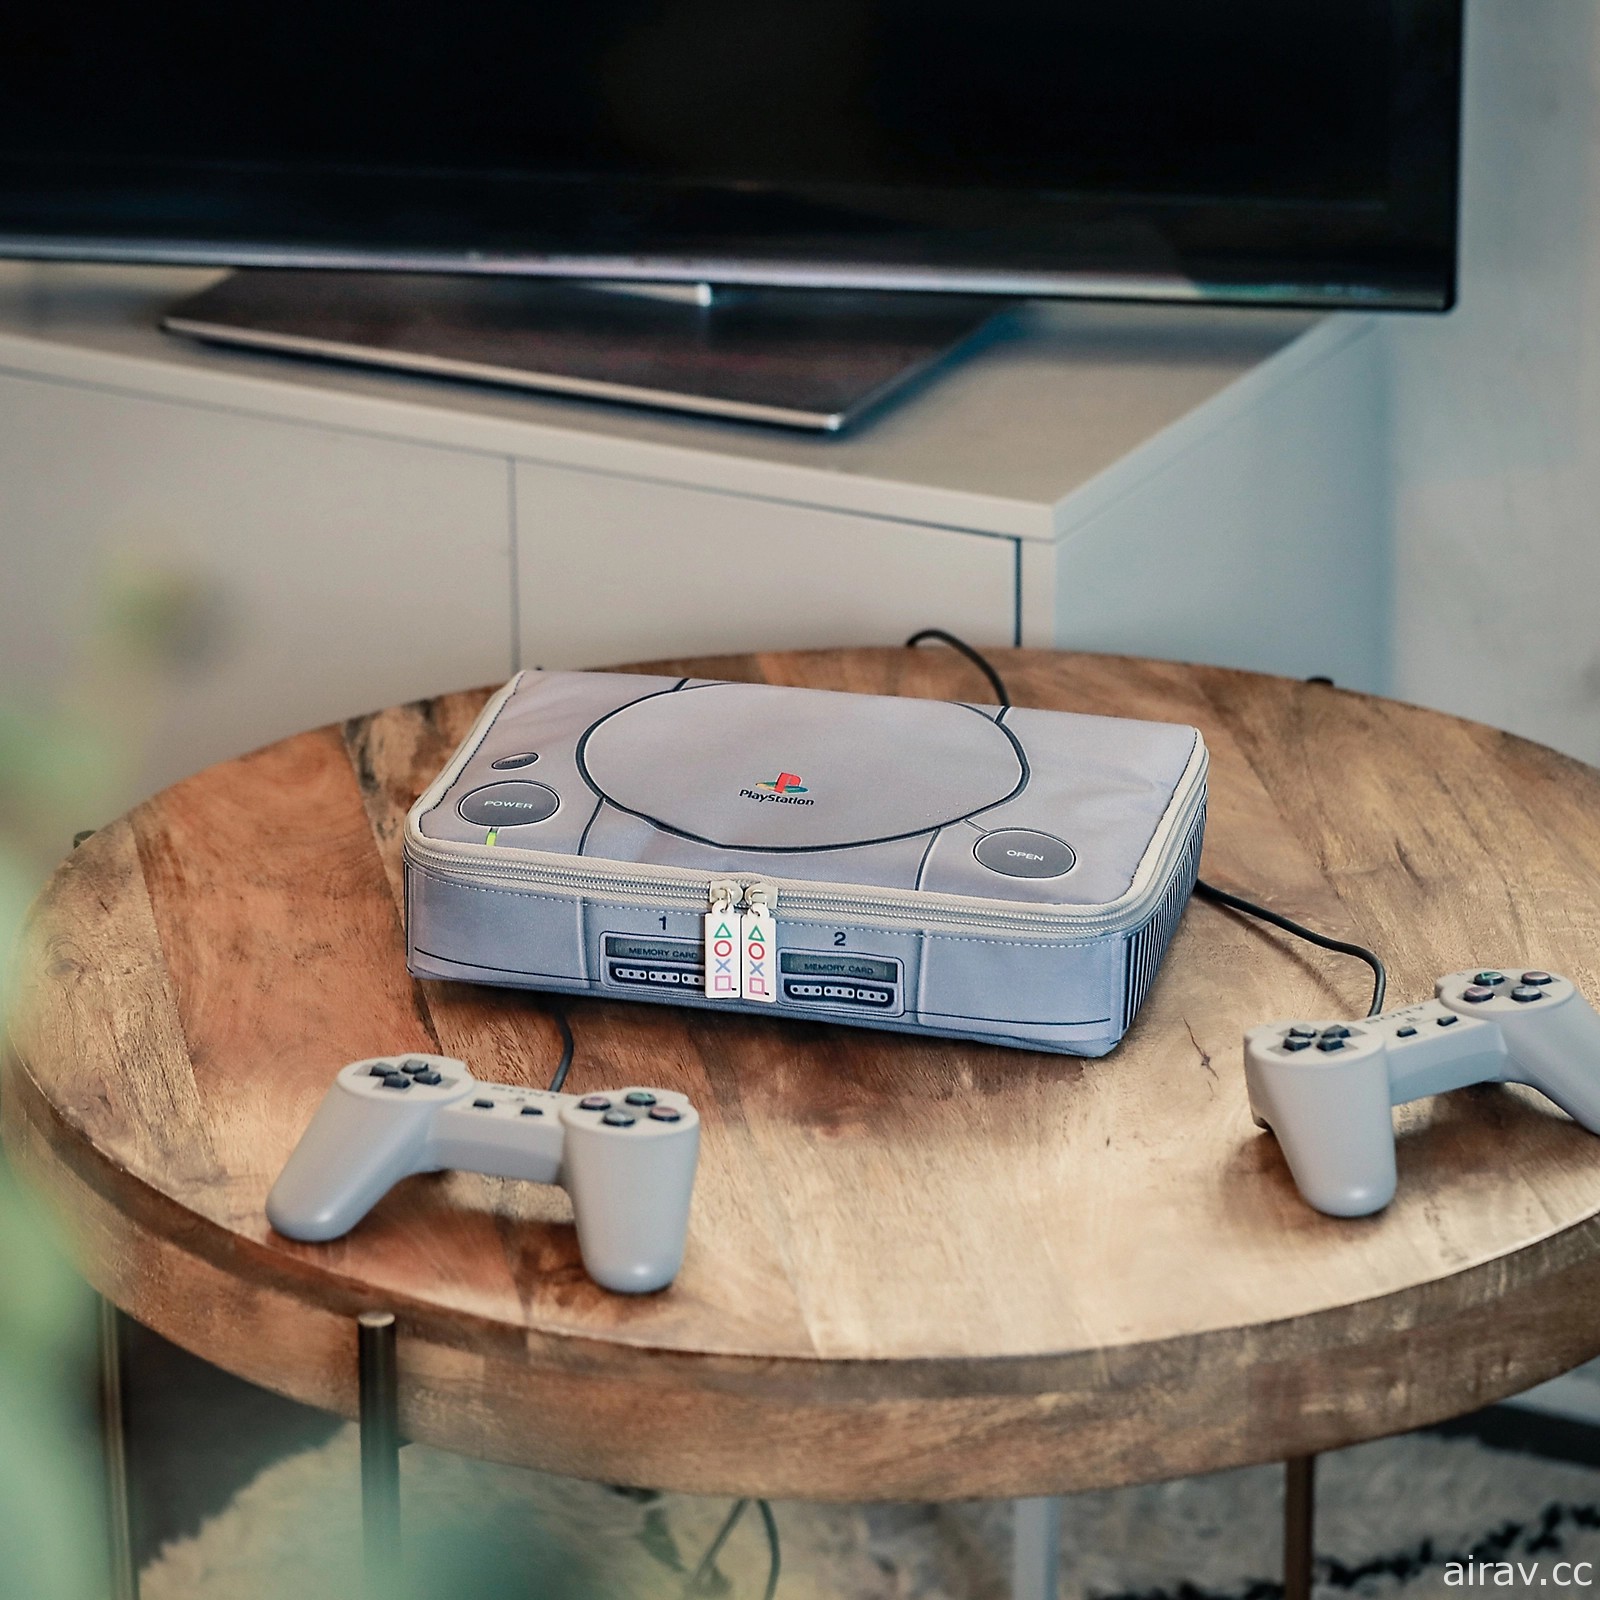 寶島社發表附贈初代 PlayStation 主機原尺寸收納包的雜誌刊物 預定 6/13 推出